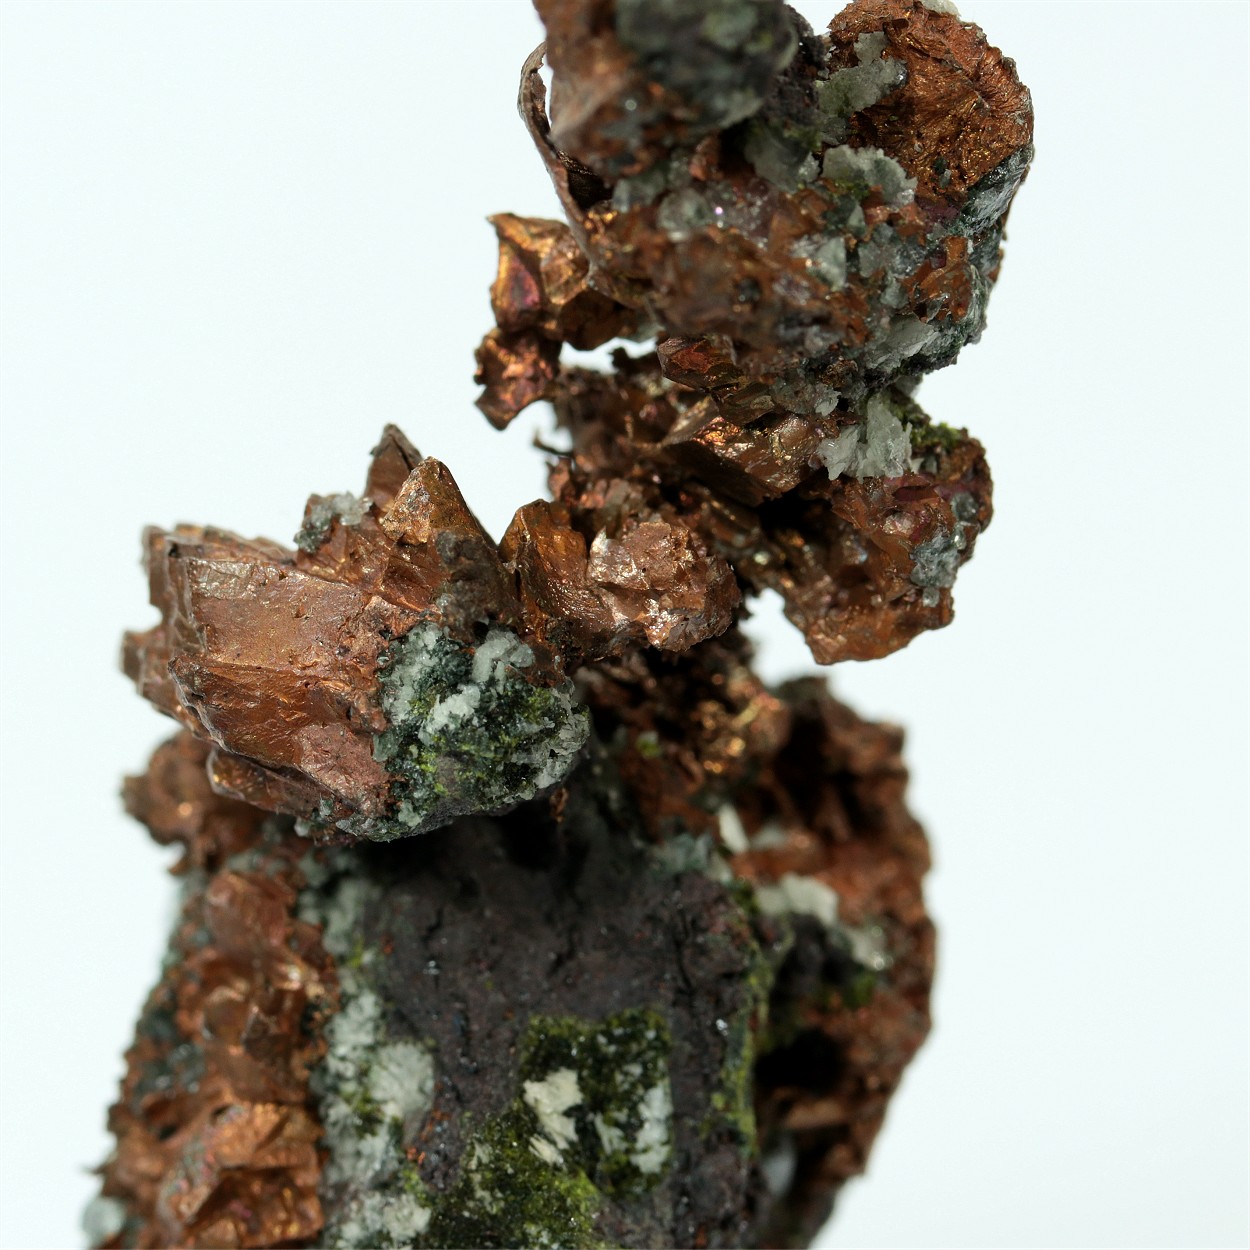 Native Copper With Epidote